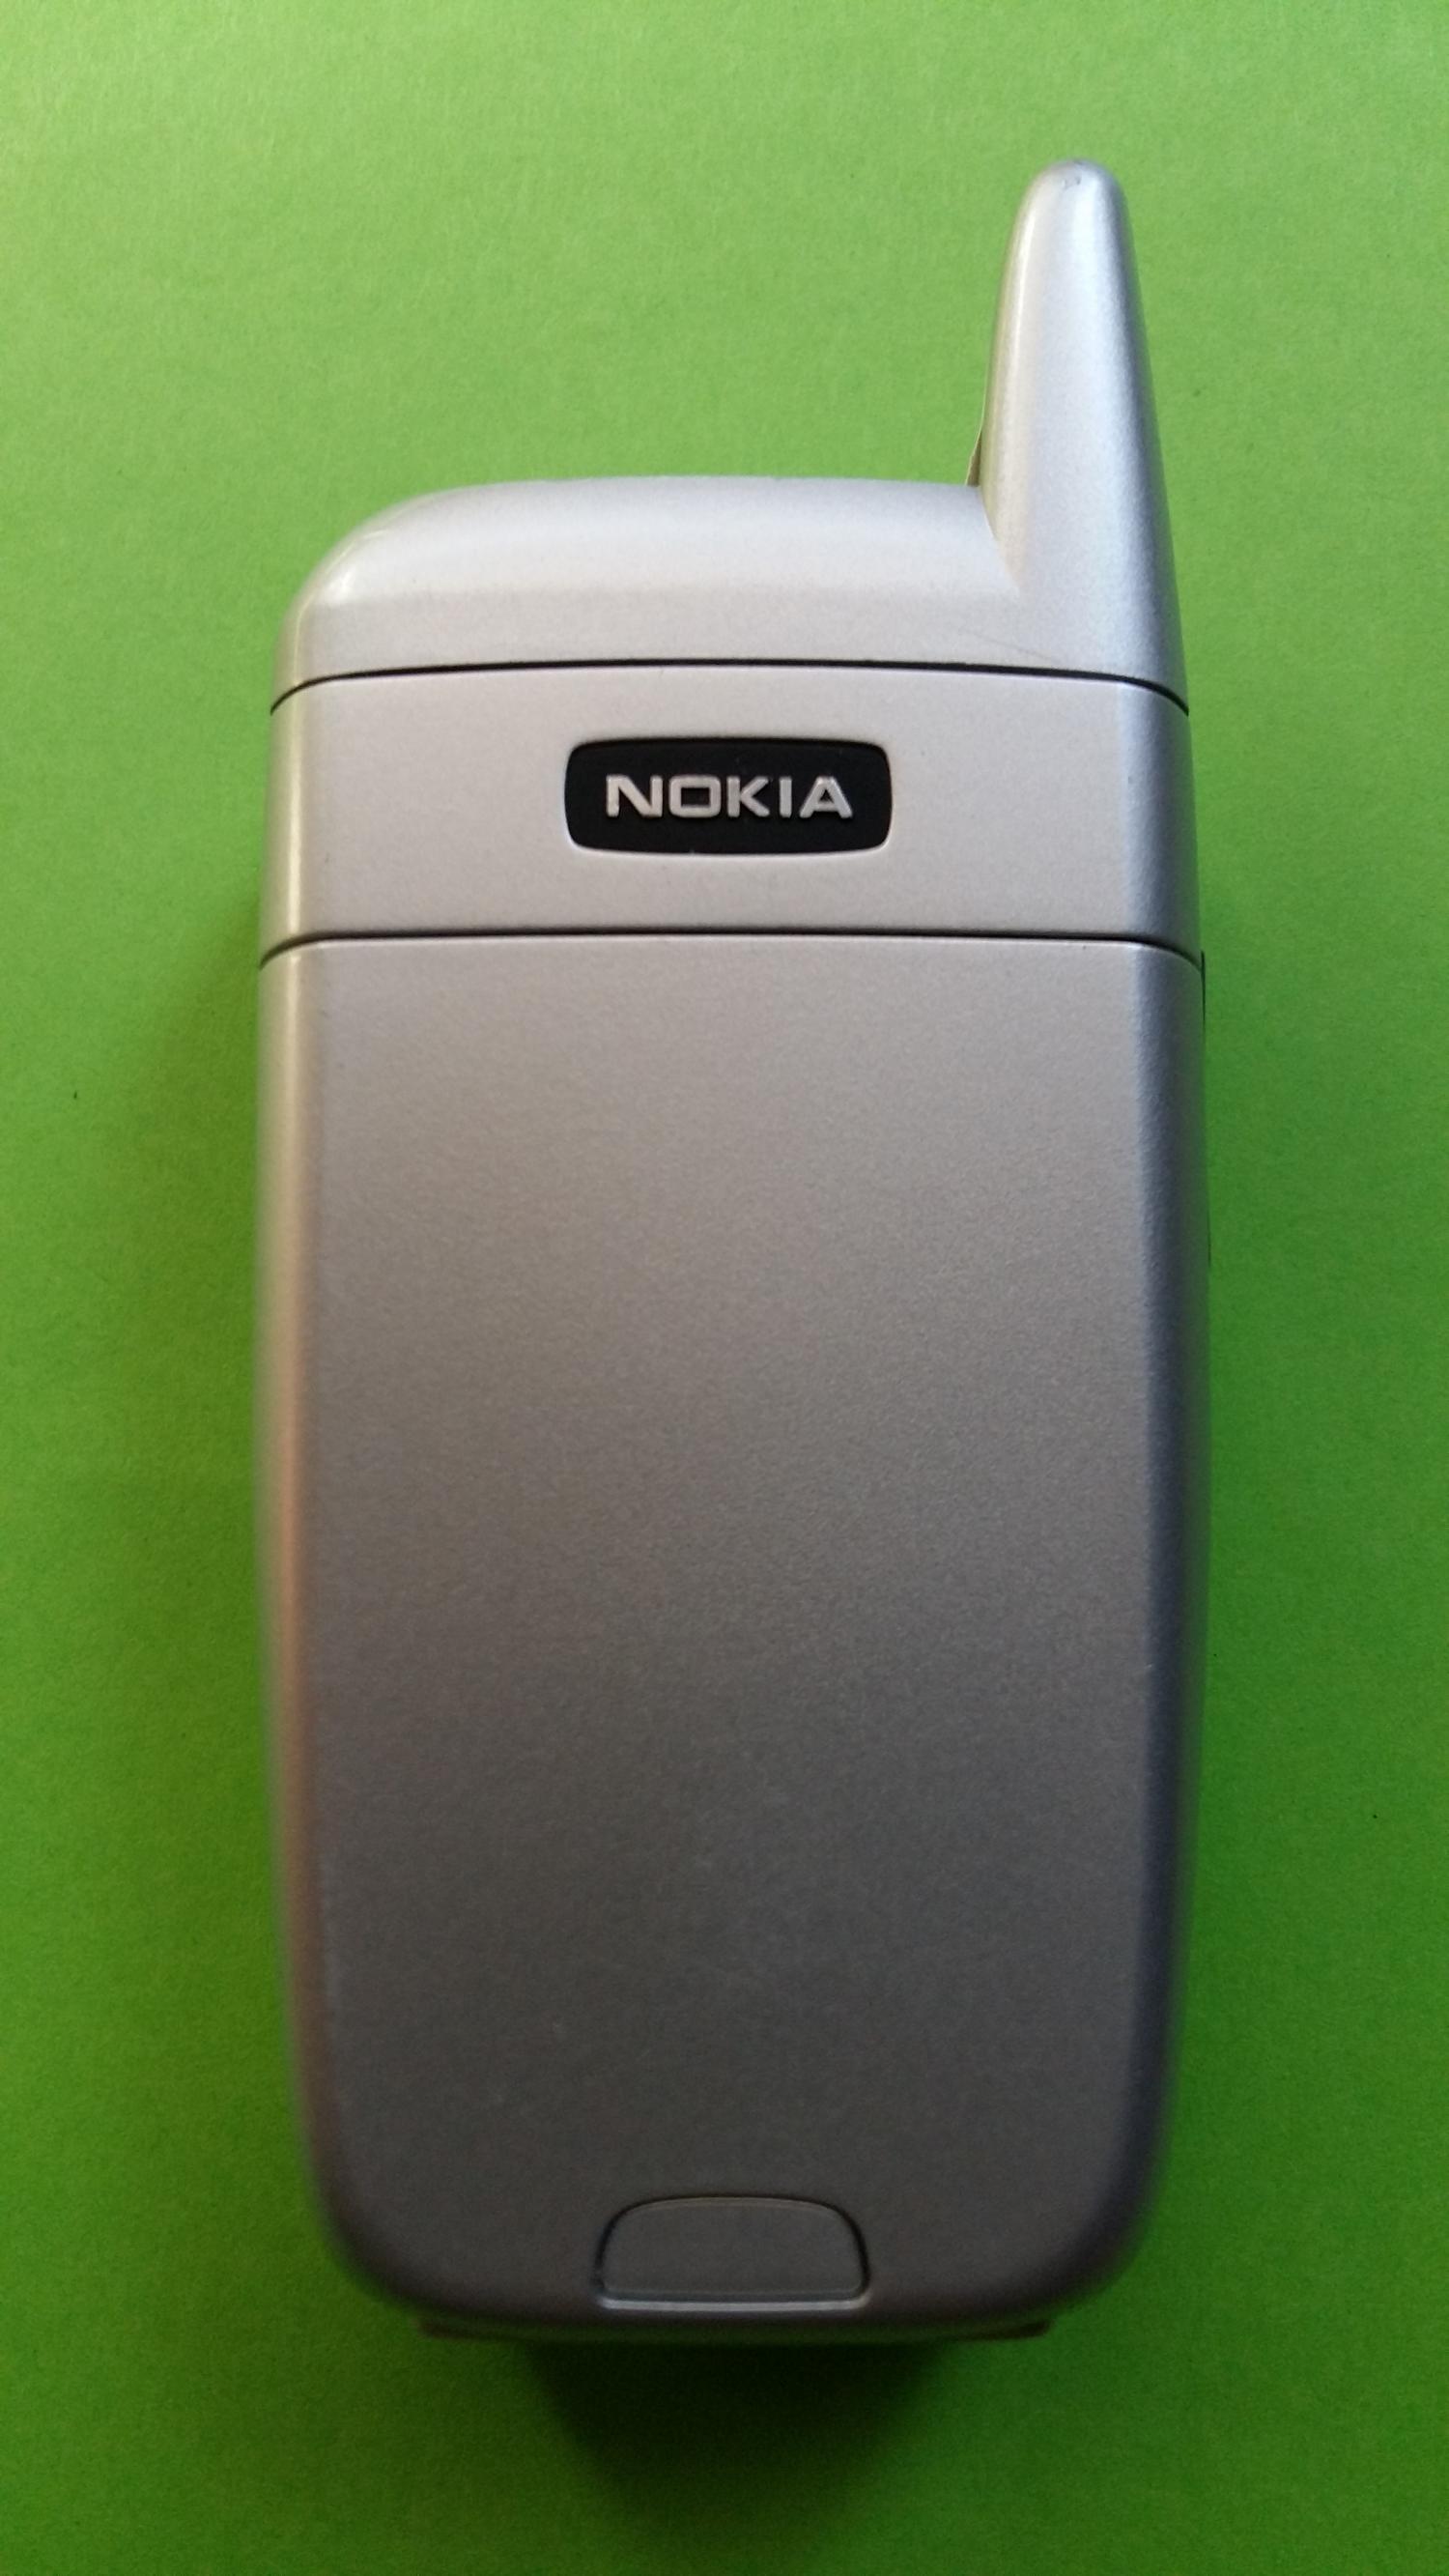 image-7323257-Nokia 6101 (1)5.jpg